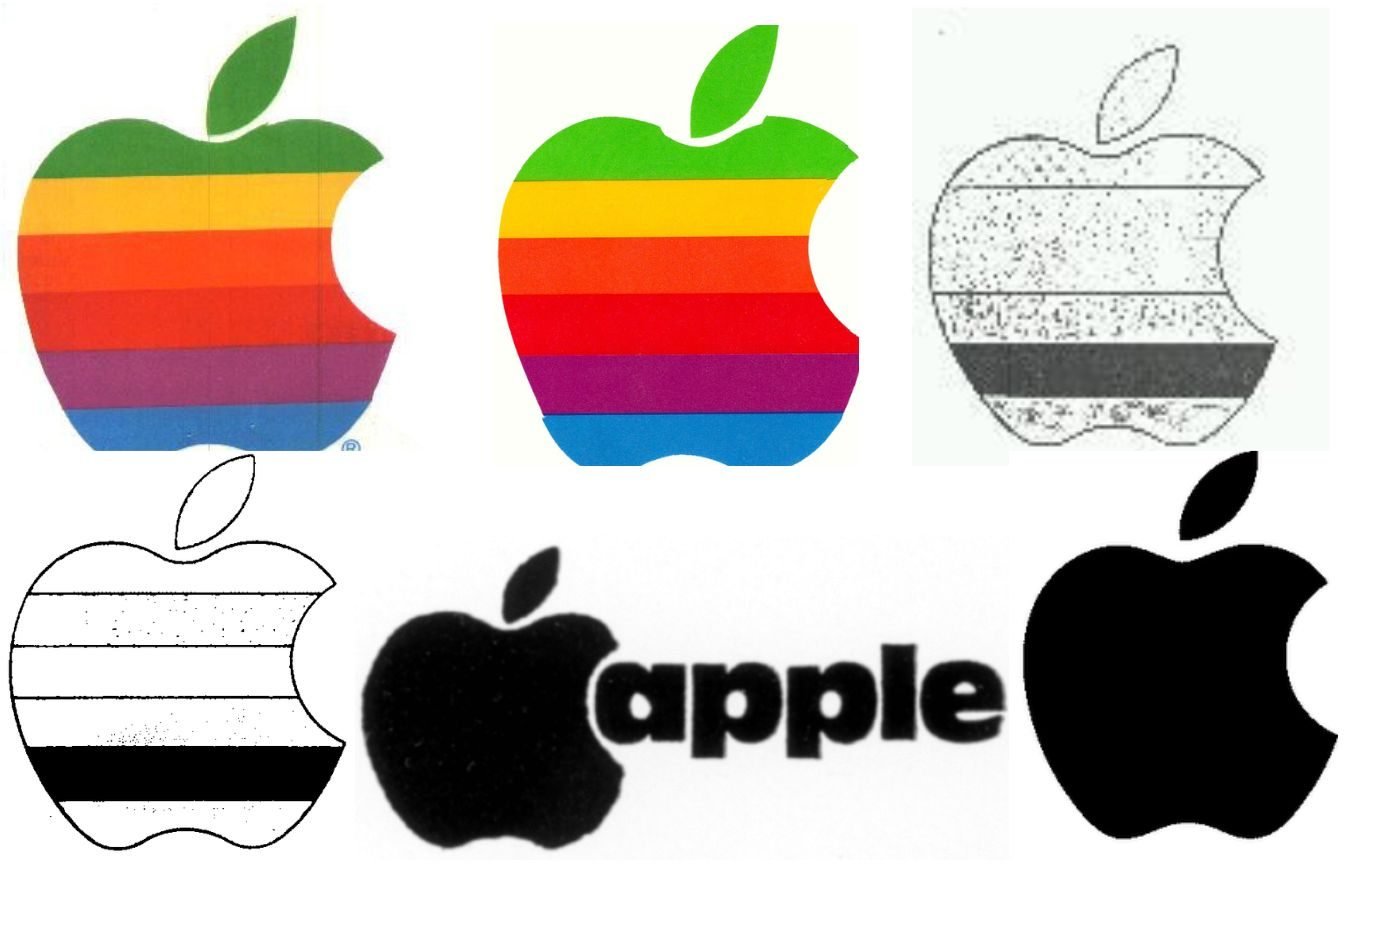 Marques figuratives déposées par Apple dans les années 80 et 90